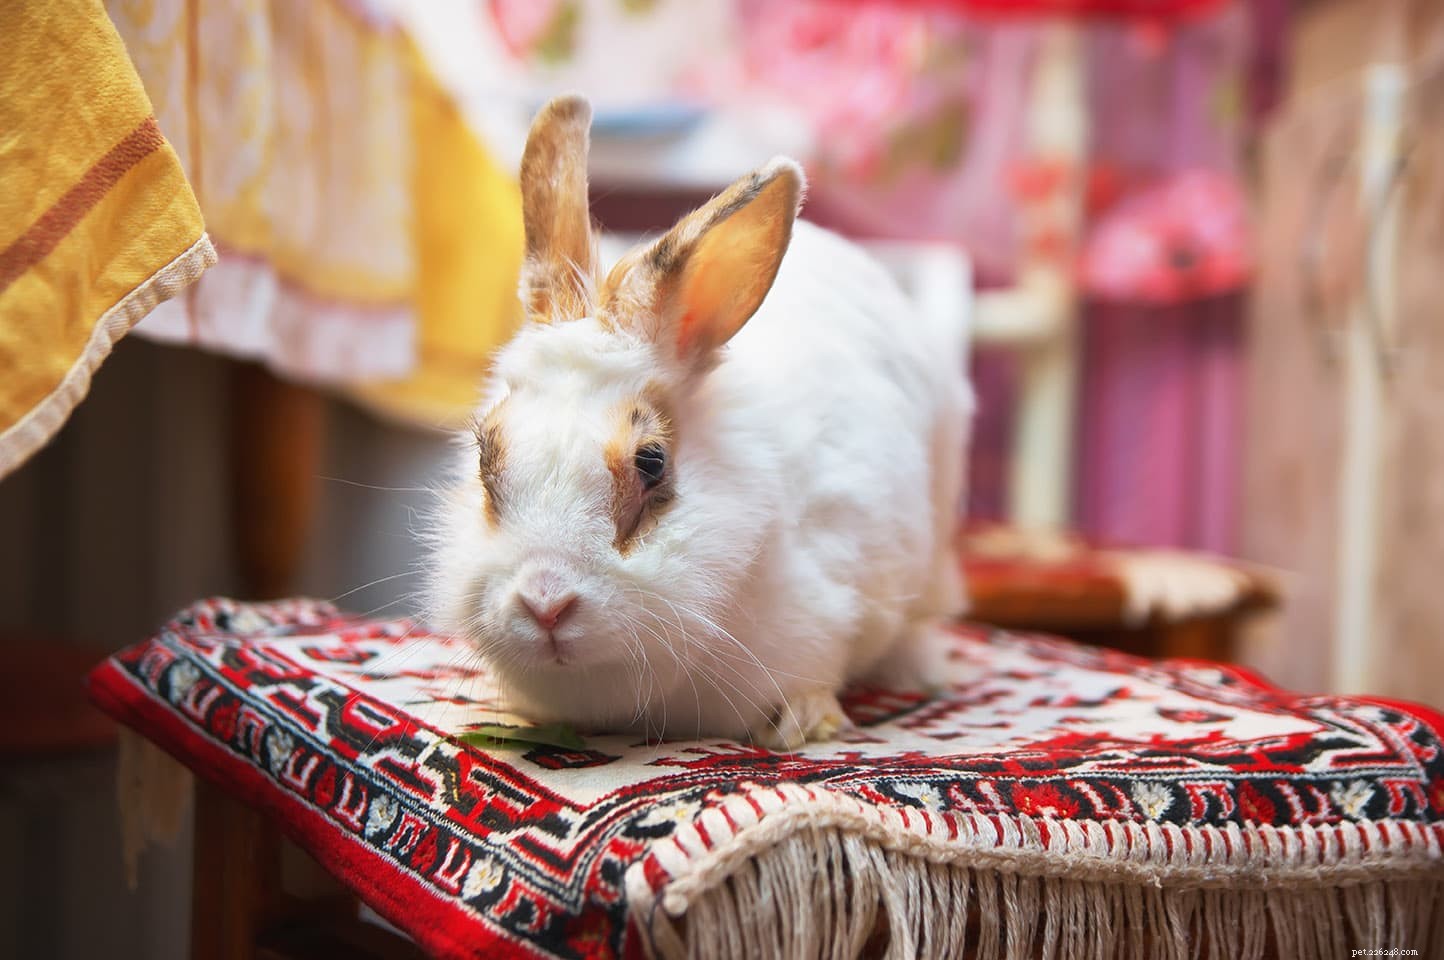 토끼 방을 만드는 방법(요령, 팁 및 DIY 아이디어)